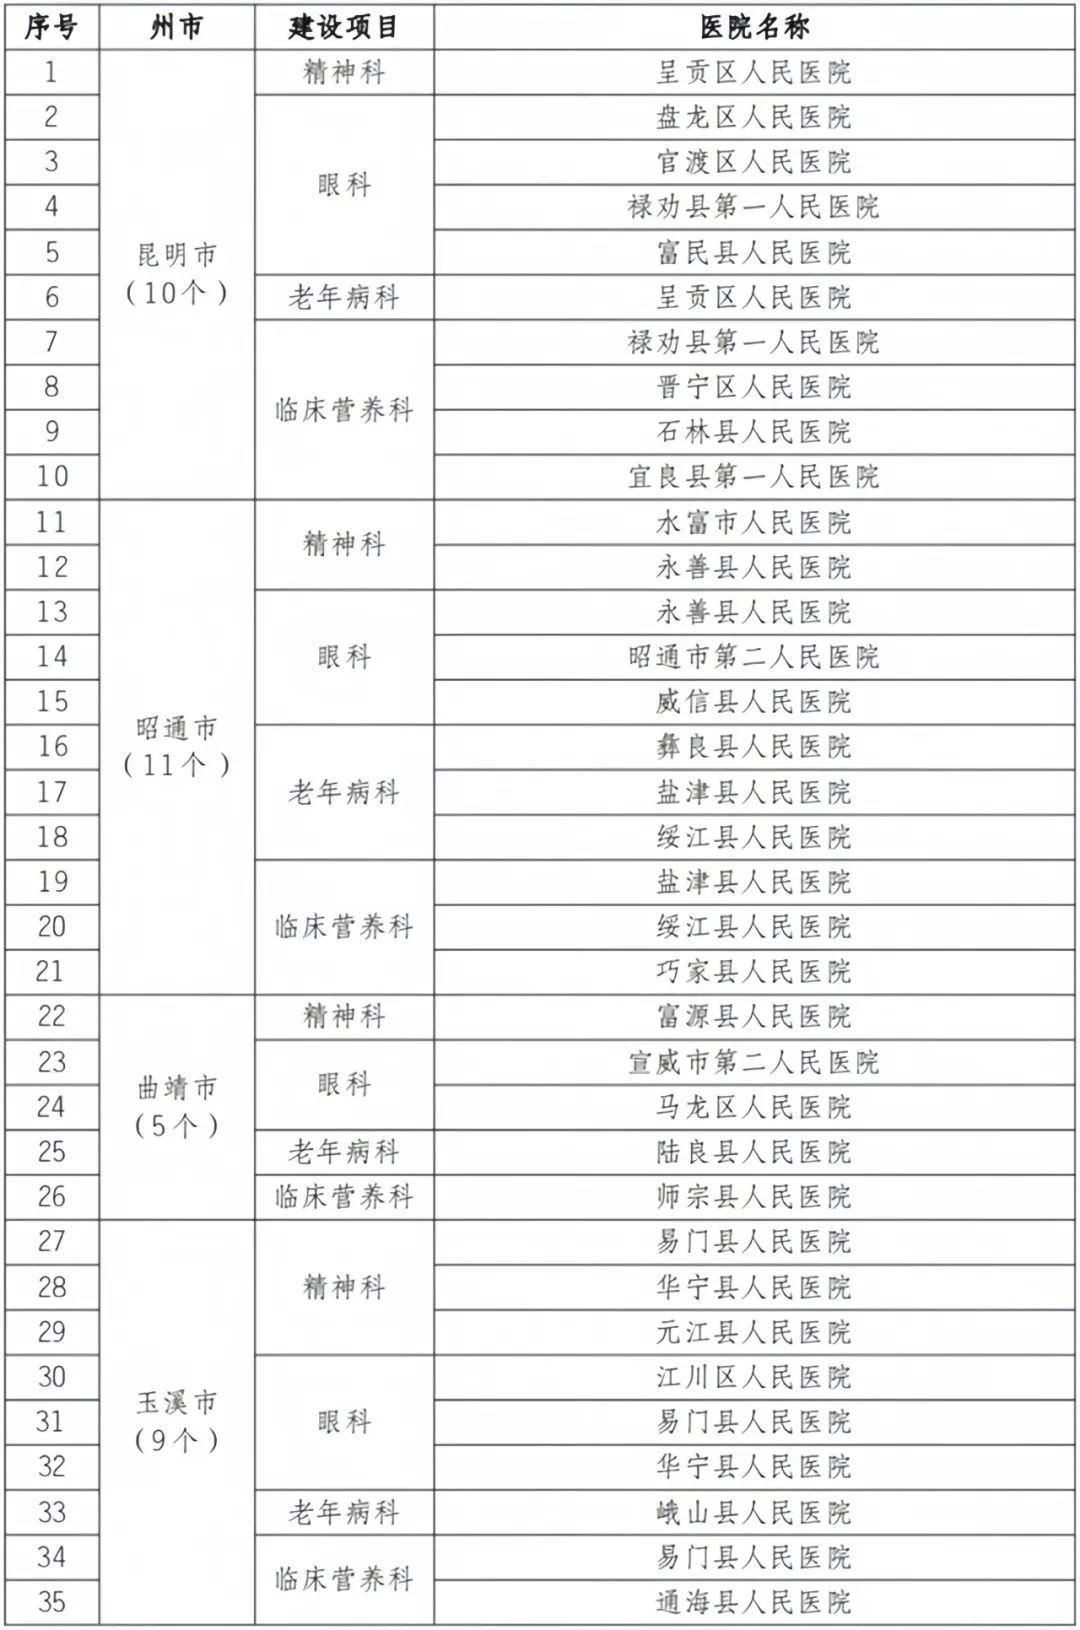 宁蒗县人民医院精神病科和永胜县人民医院老年病科获得验收通过.jpg